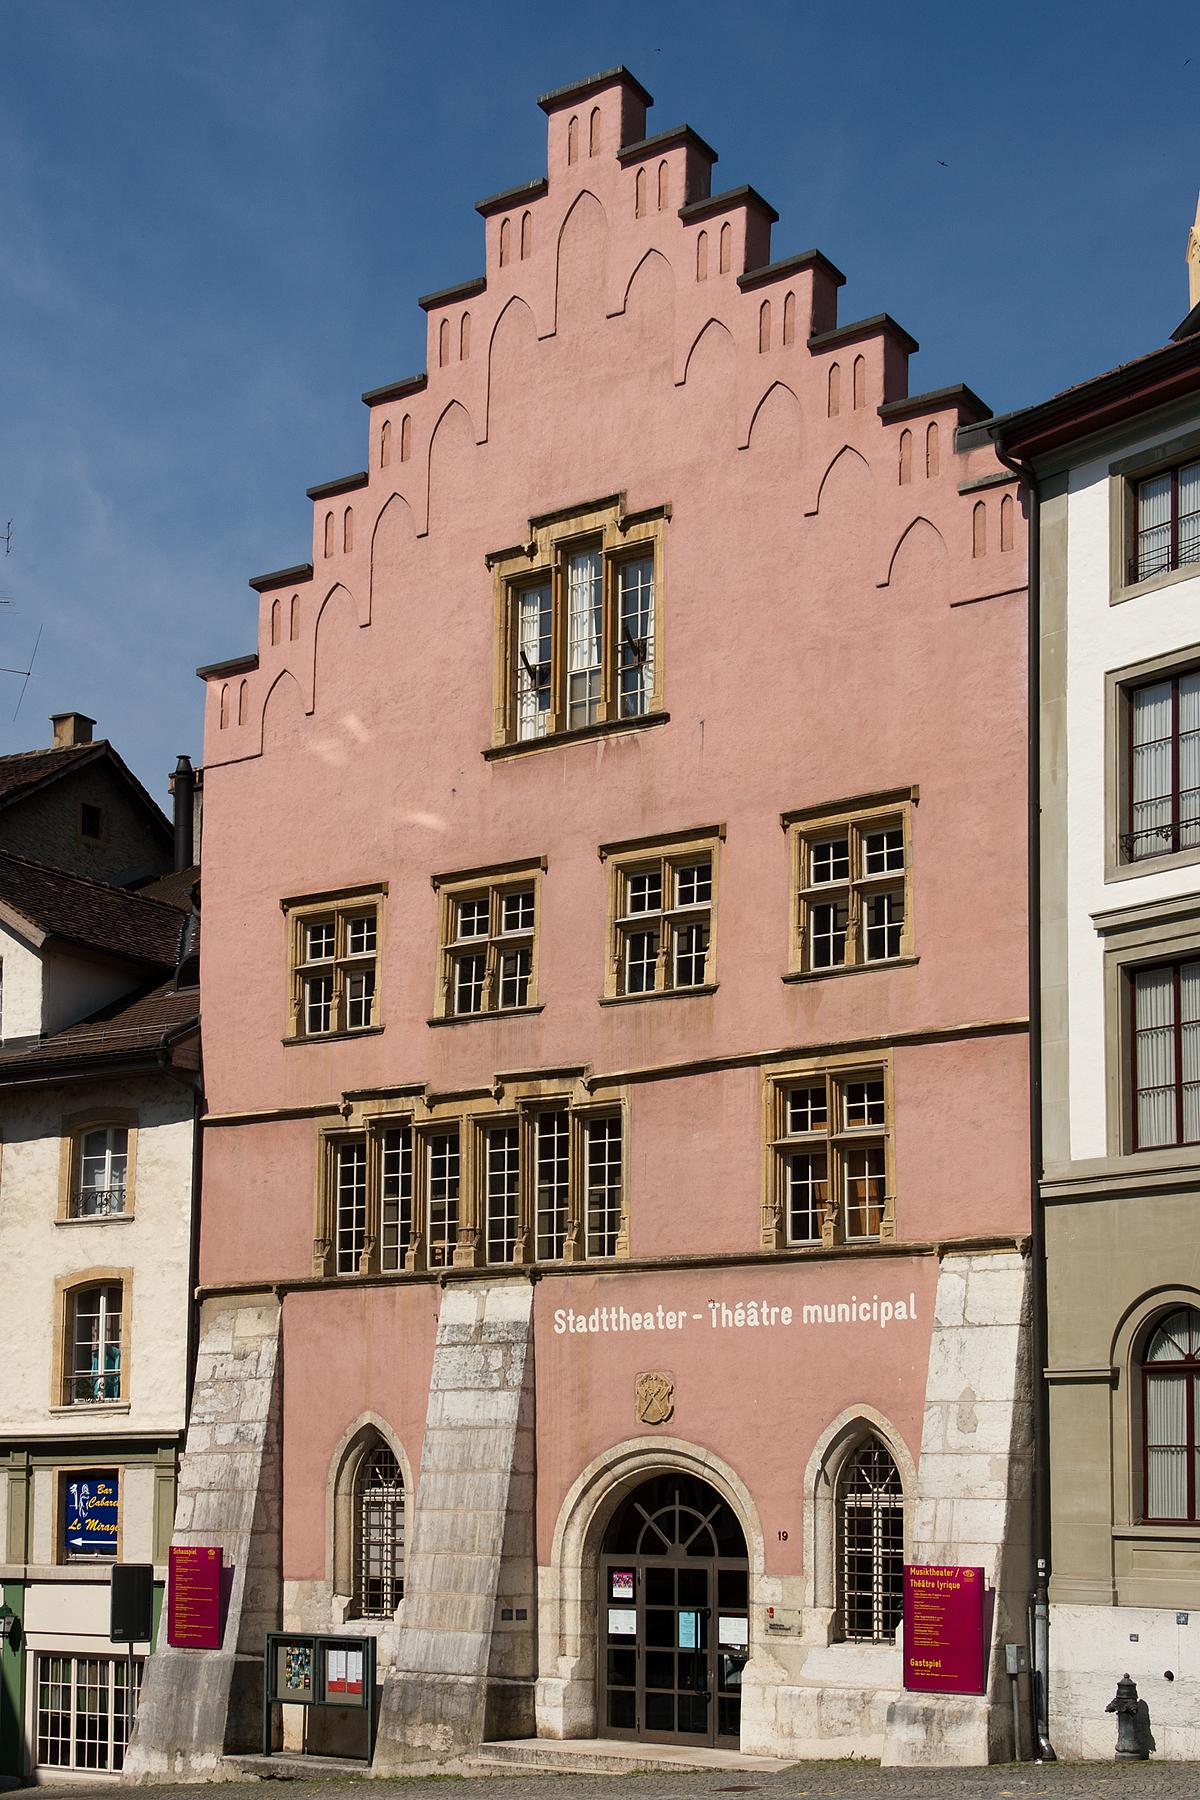 Das Stadttheater von Biel (BE), eines der Burghäuser